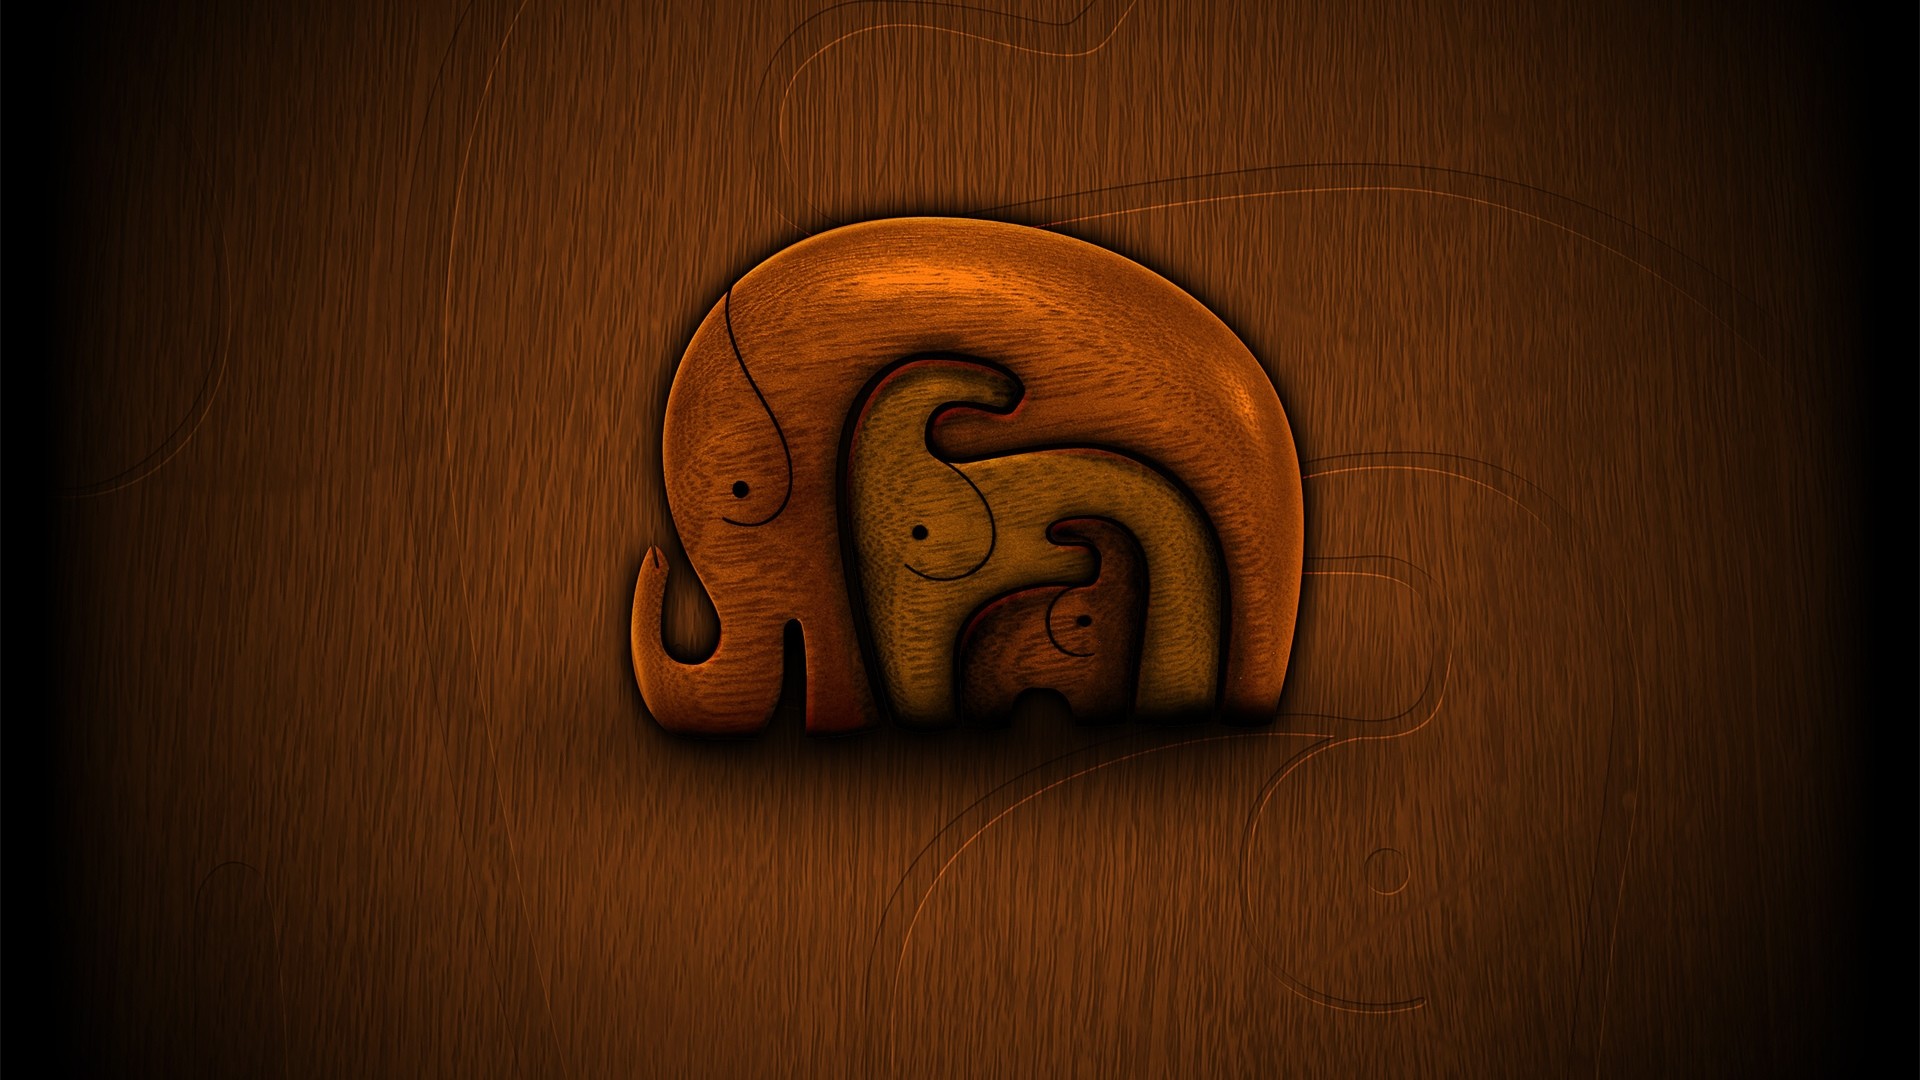 Best ideas about Elephant wallpaper on Pinterest Elephant